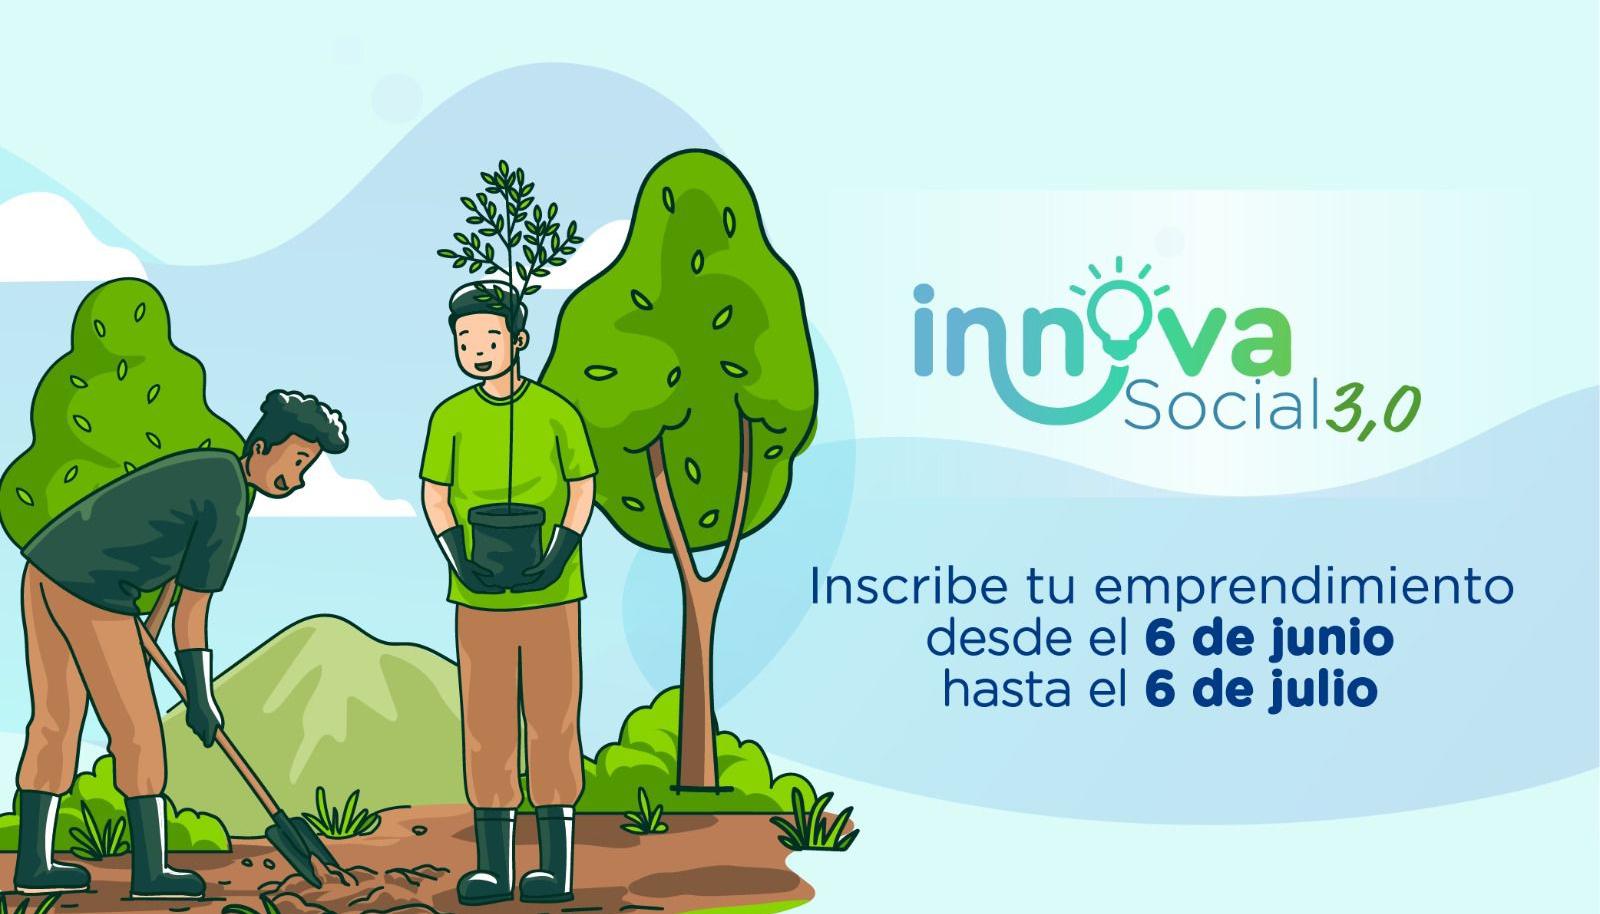 ‘Innova Social 3.0’.